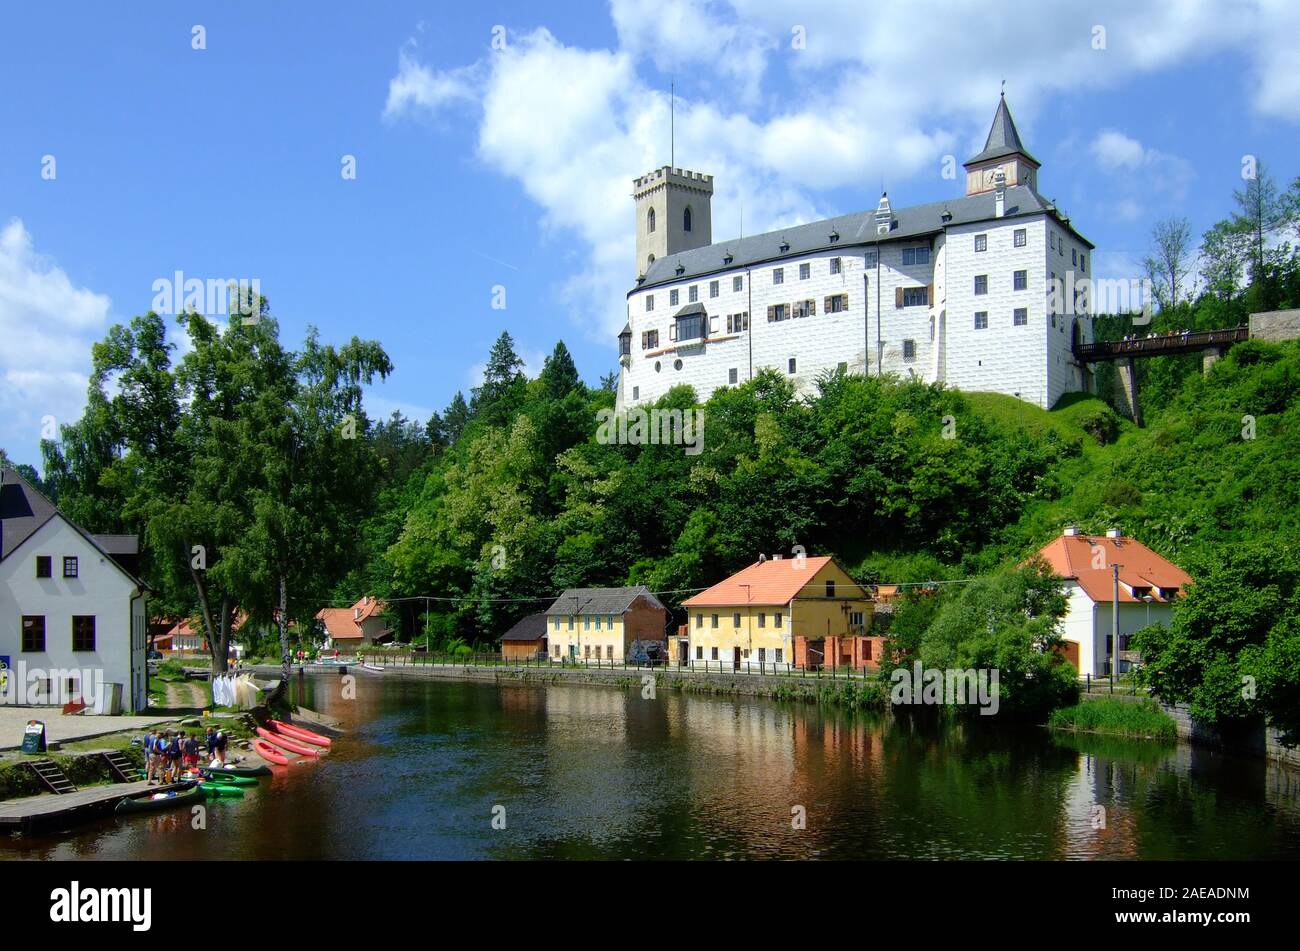 Tschechien - Schloss Rosenberg an der Moldau Foto Stock